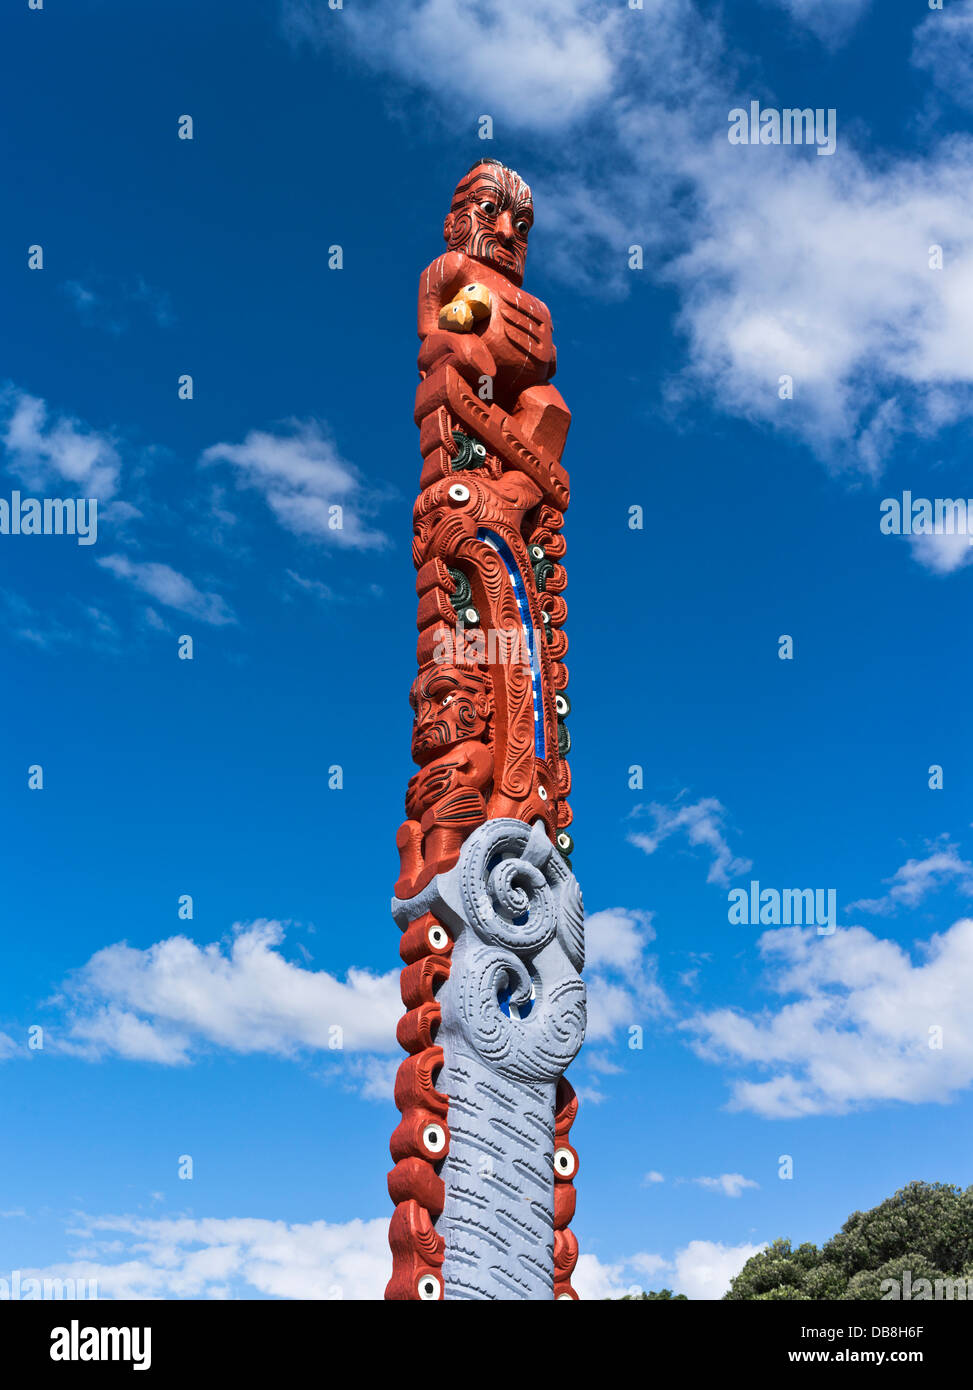 dh Waiotahi Beach BAY OF PLENTY NEUSEELAND Maori geschnitzt Holzmast in der Nähe von Opotiki Schnitzereien Heritage Holz Nordinsel Schnitzereien Skulptur Stockfoto